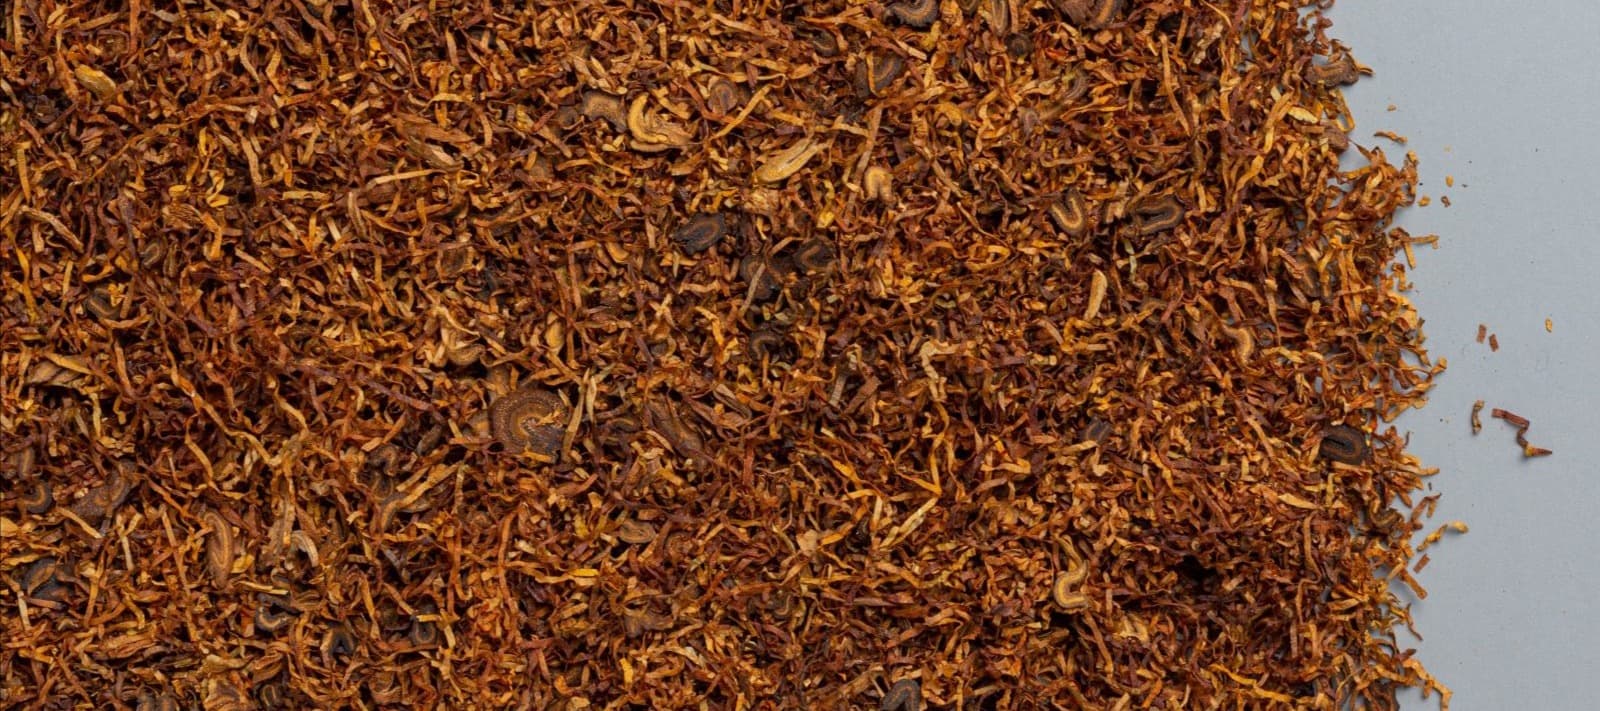 Фото новости: "Россельхознадзор попросил остановить ввоз табака из Индии"